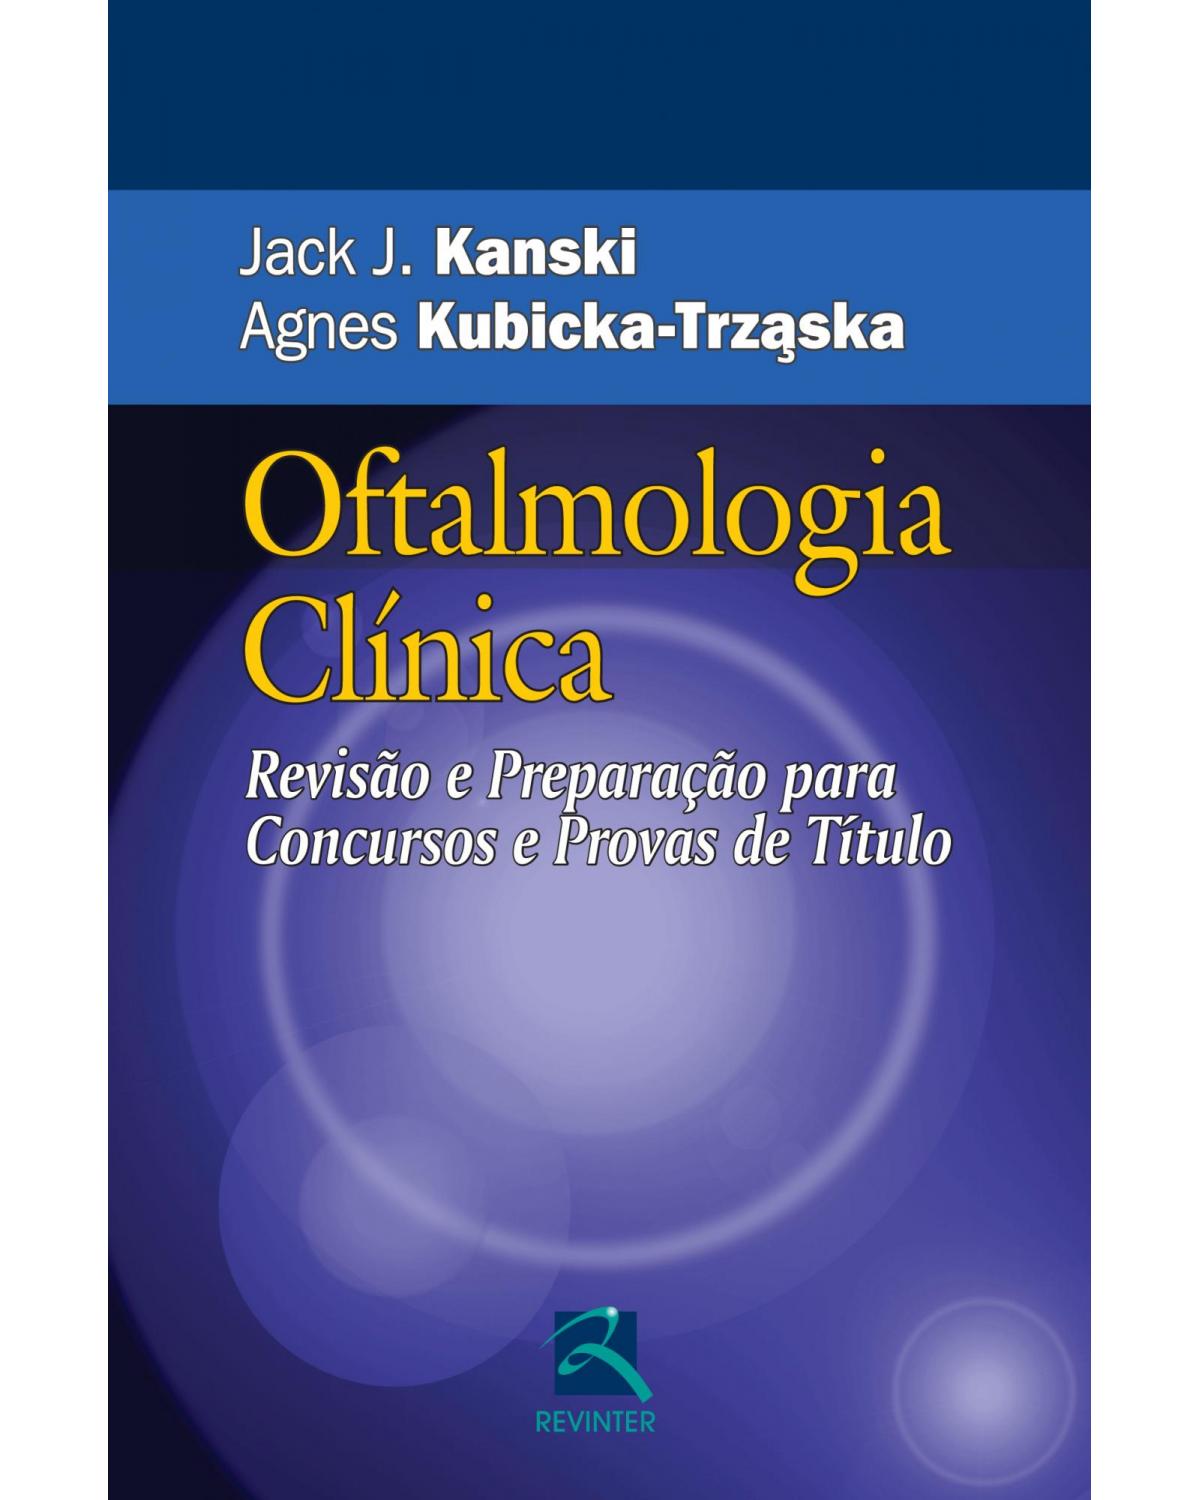 Oftalmologia clínica - revisão e preparação para concursos e provas de título - 1ª Edição | 2012